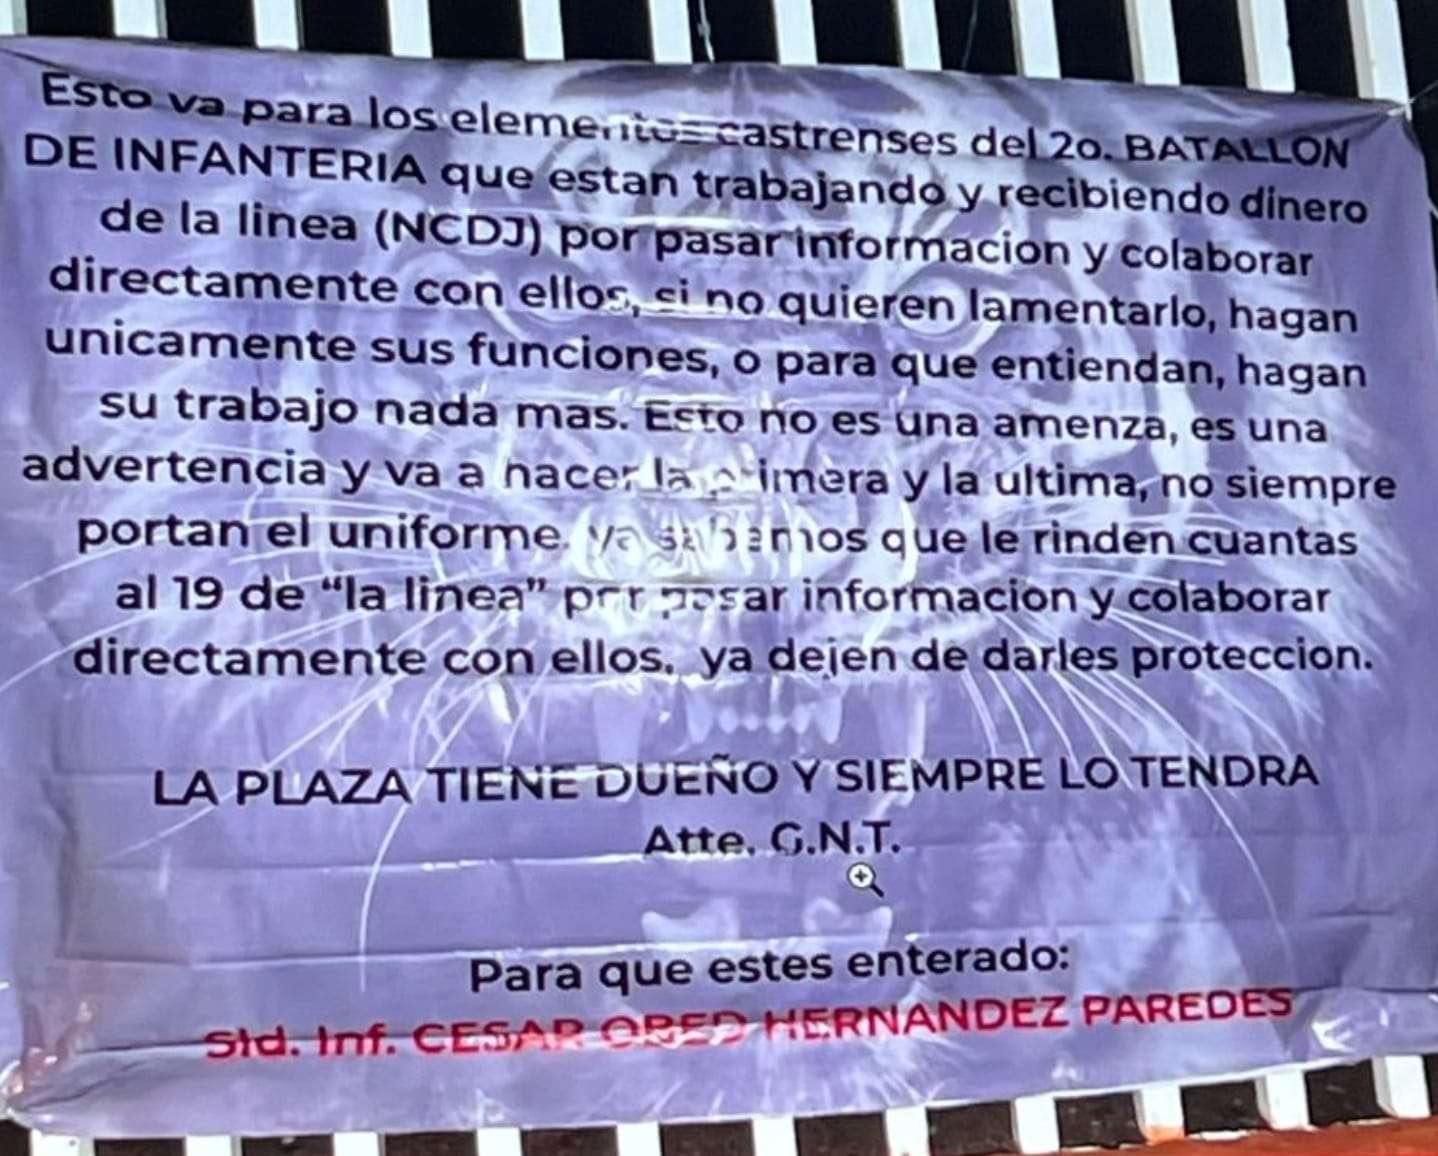 Cuelgan lonas en Cuauhtémoc acusando a soldados de apoyar a La Línea